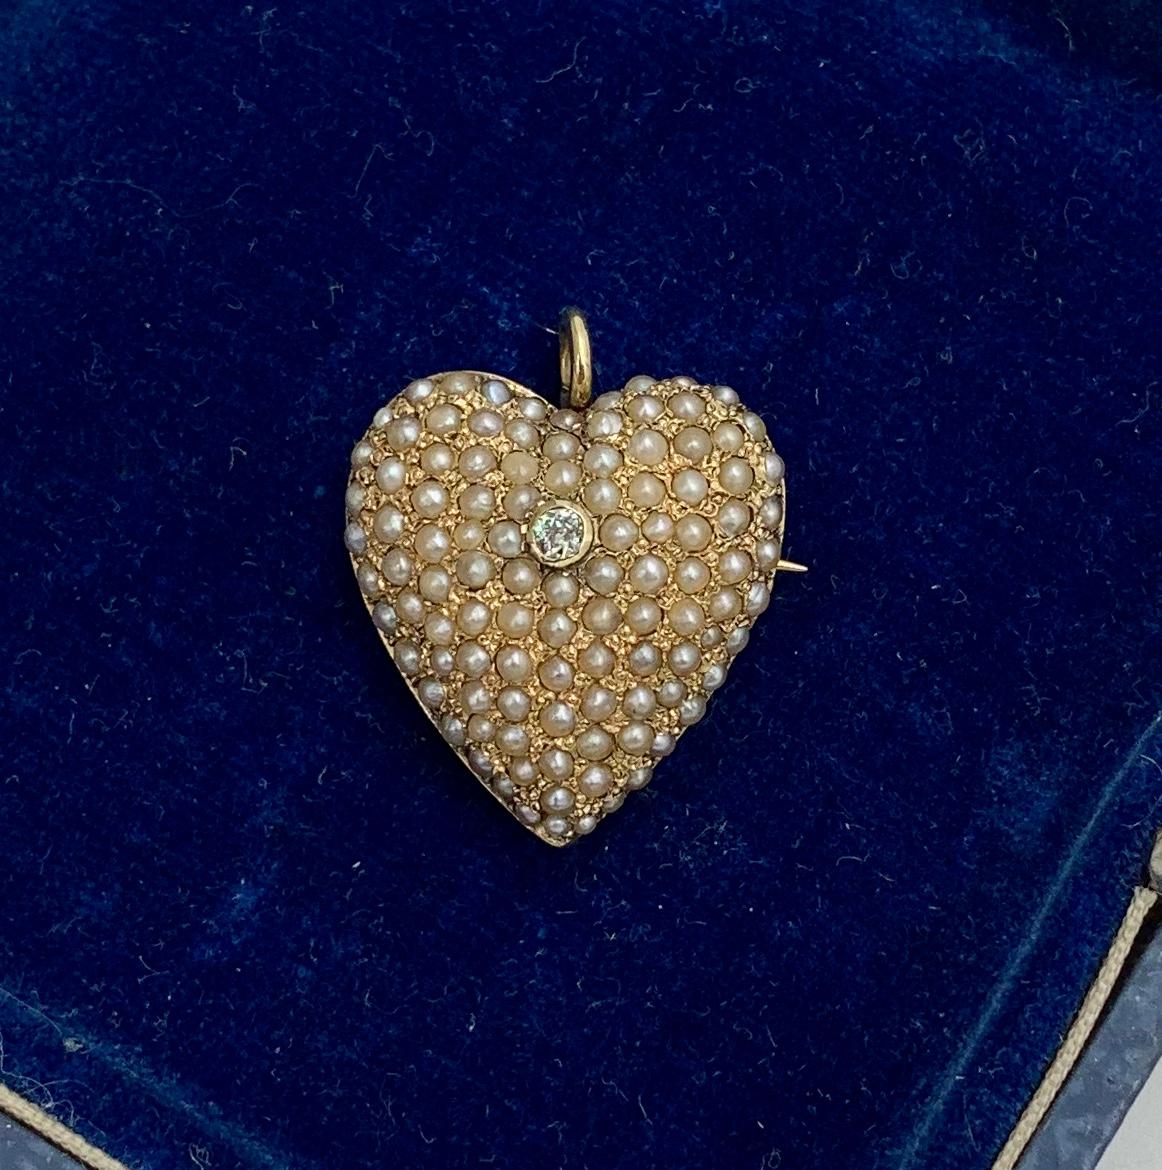 Dies ist ein antiker viktorianischer Diamant-Herz-Anhänger, der durchgehend mit hübschen Saatperlen besetzt ist.  In der Mitte befindet sich ein funkelnder Diamant im Old Mine Cut.  Der Diamant und die Perlen sind in ein wunderschönes 14 Karat